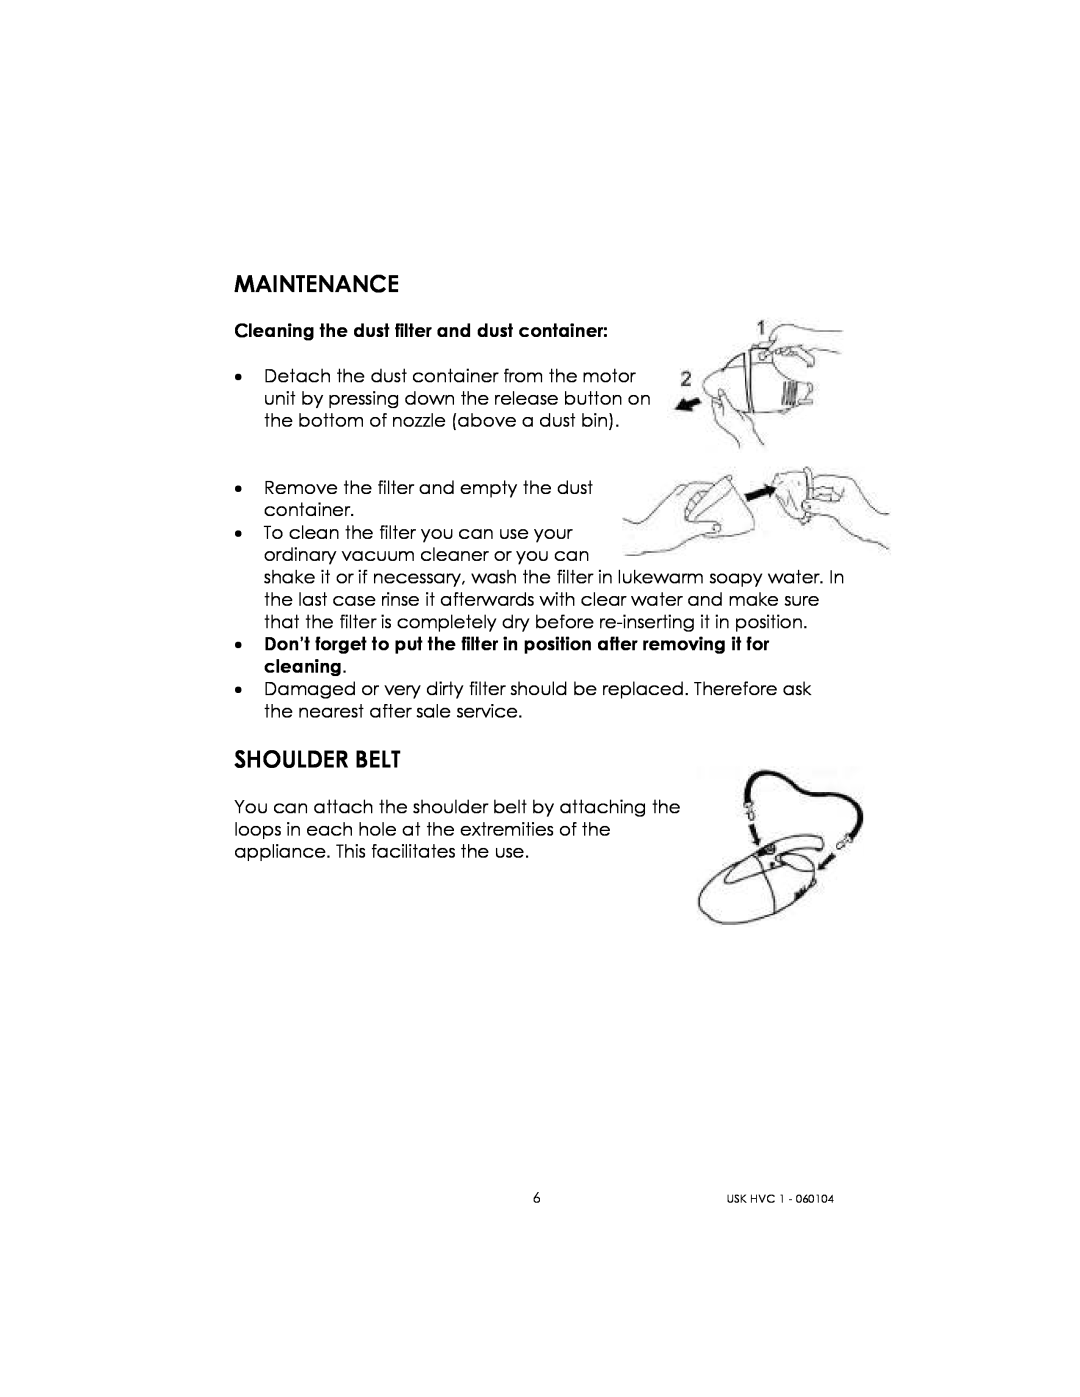 Kalorik USK HVC 1 - 060104 manual Maintenance, Shoulder Belt 